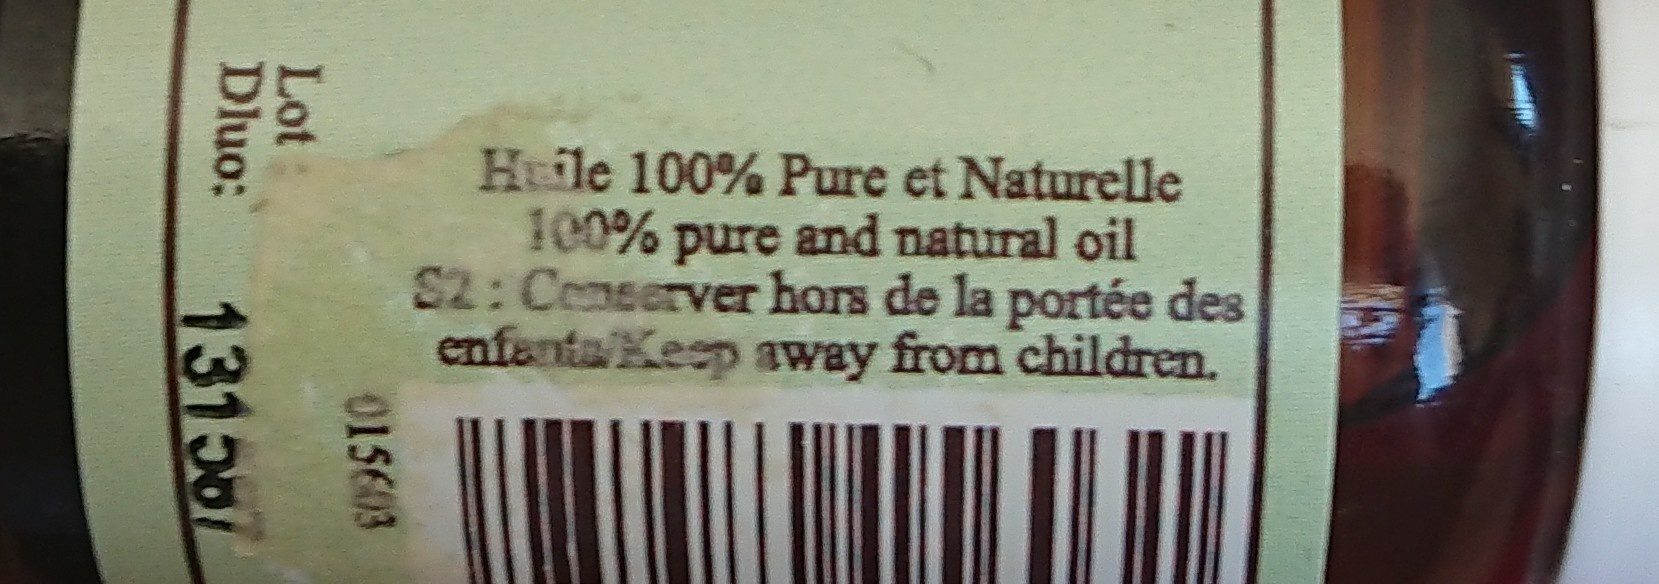 Huile essentielle de menthe poivrée - Ingredients - fr